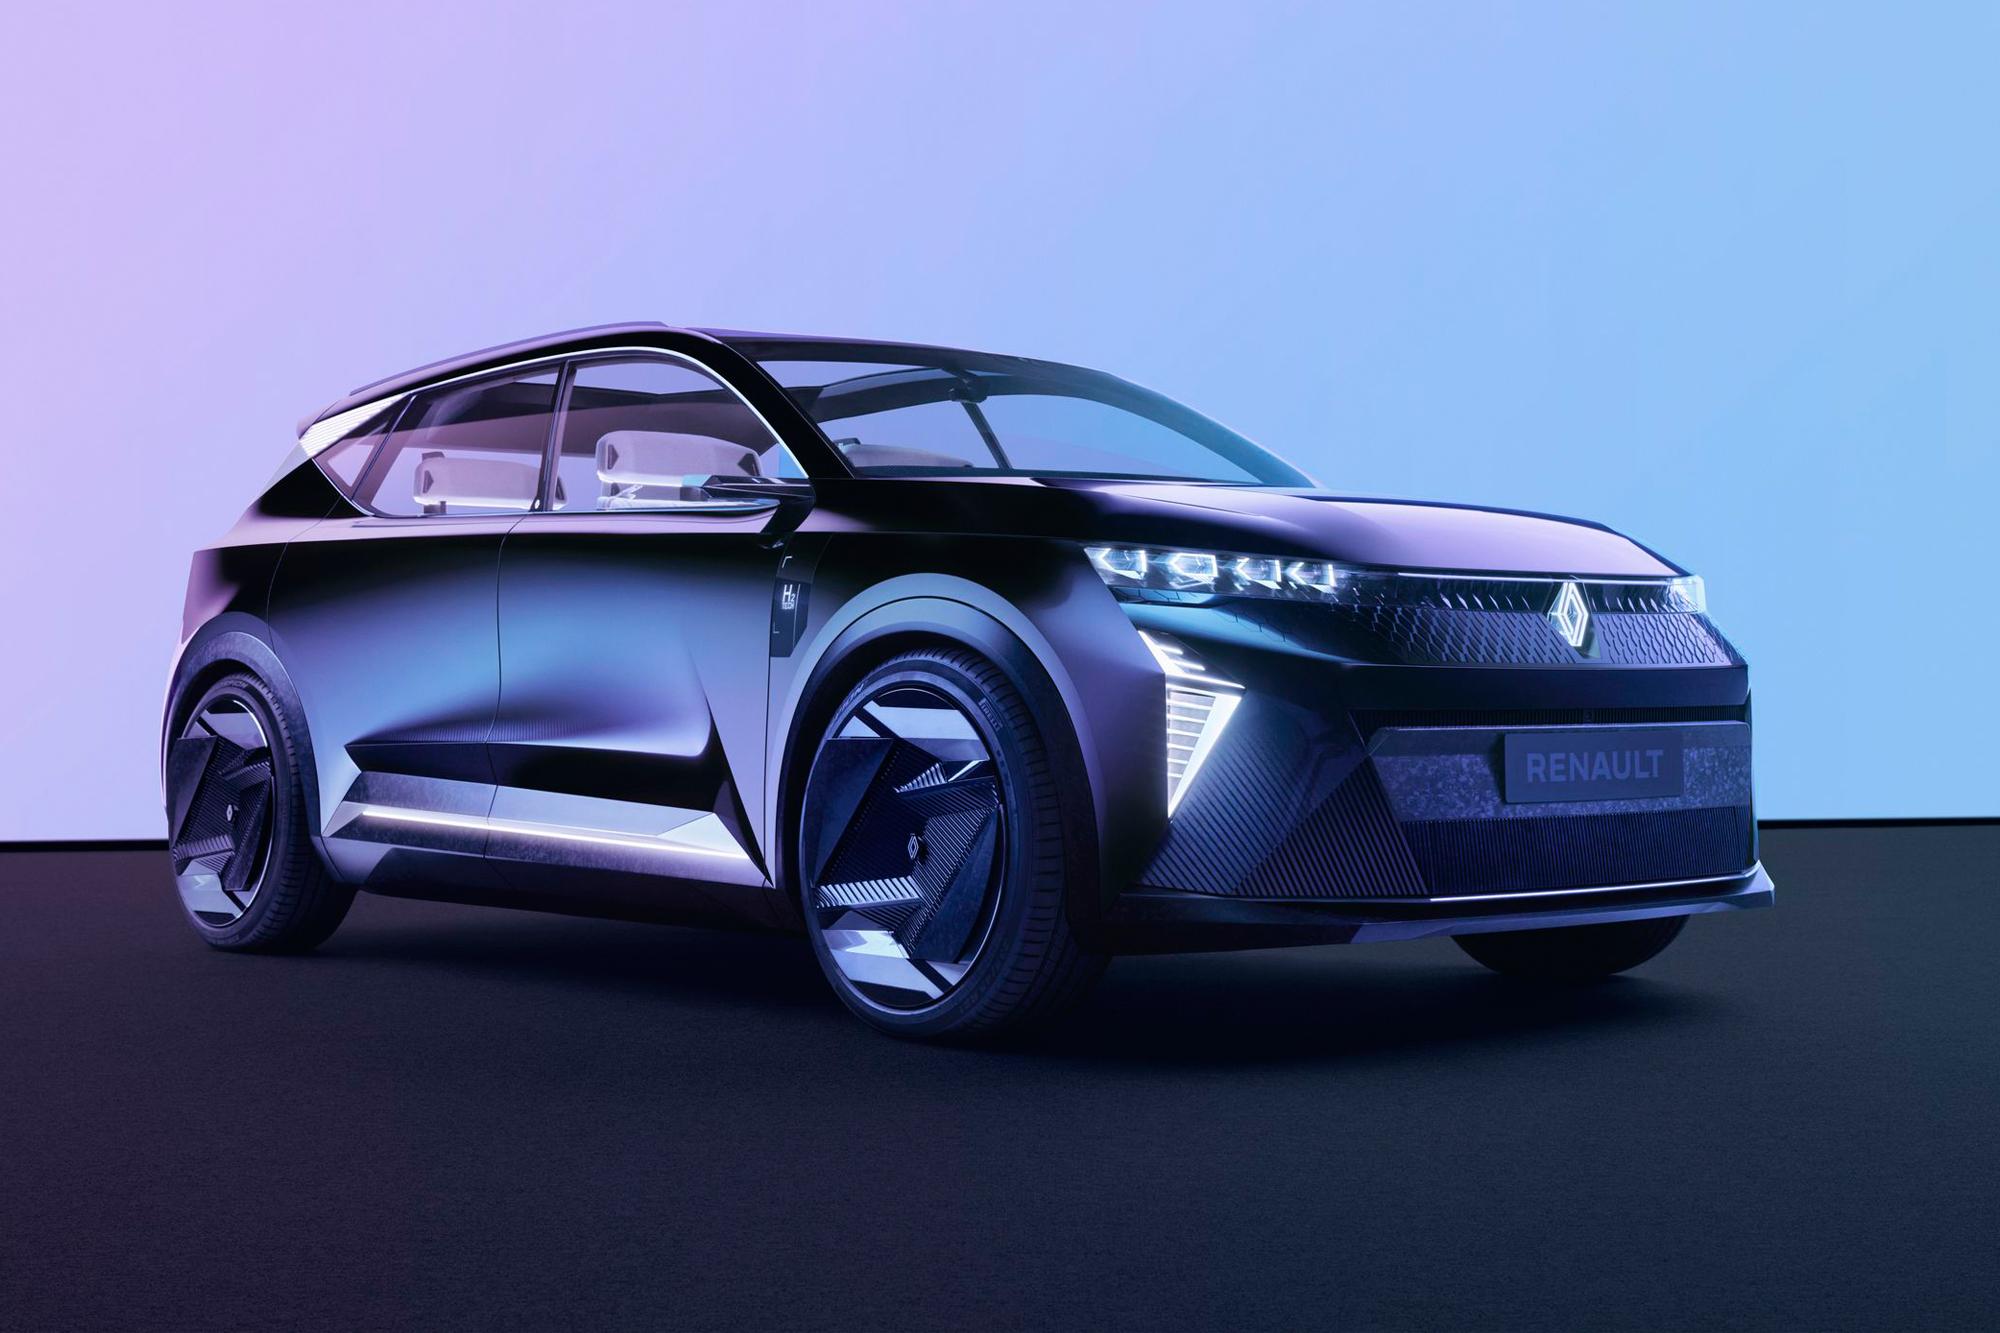 Το νέο concept της Renault, Scenic Vision